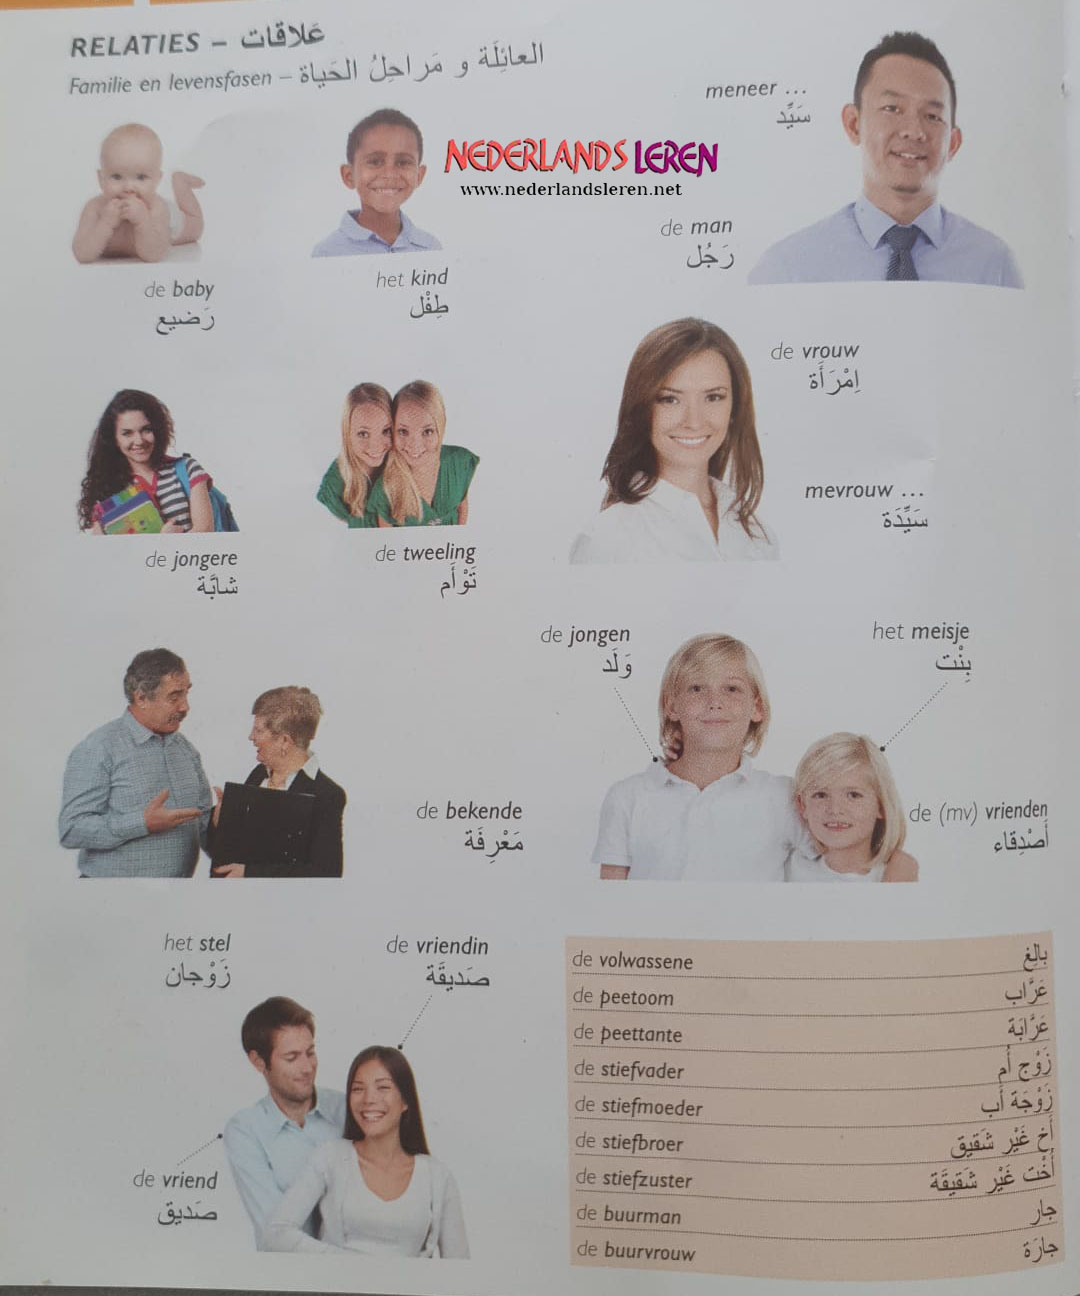 الدرس الرابع – بالصور تعلم المفردات الهولندية “العلاقات الأسرية” في اللغة الهولندية 2022